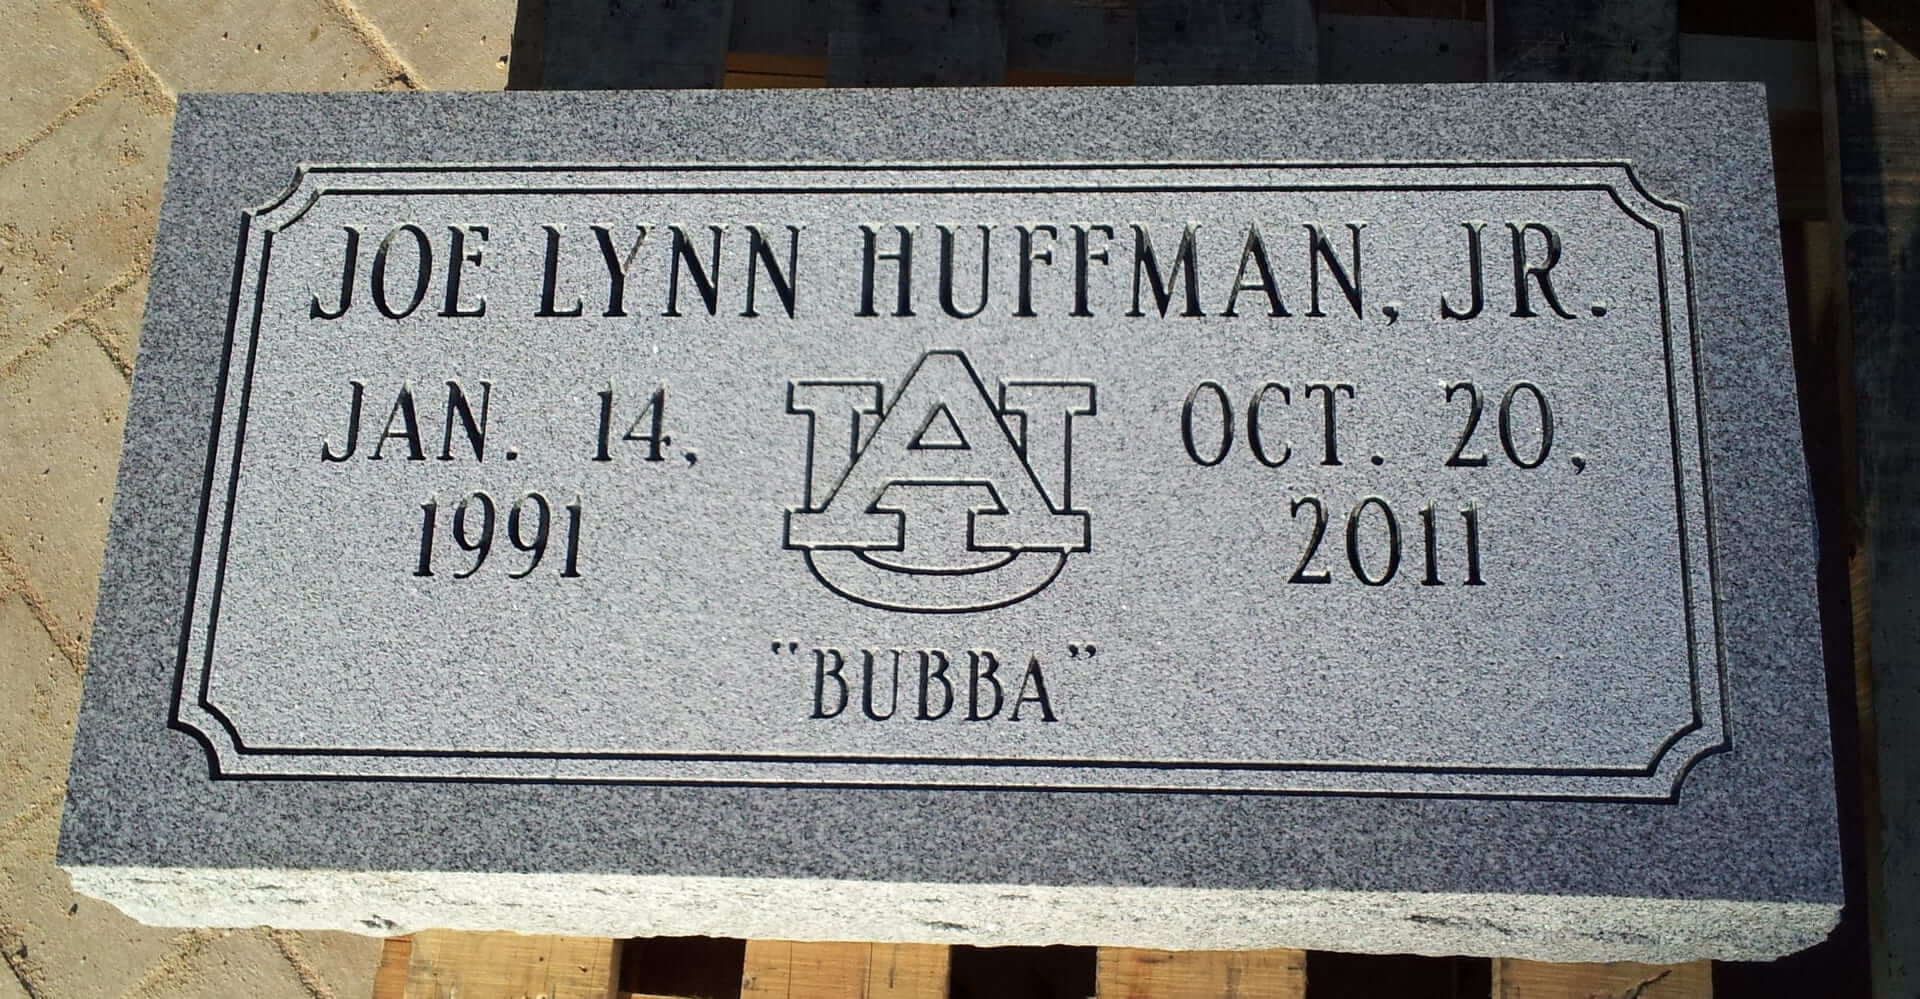 Joe Lynn Huffman Junior Memorial Slab